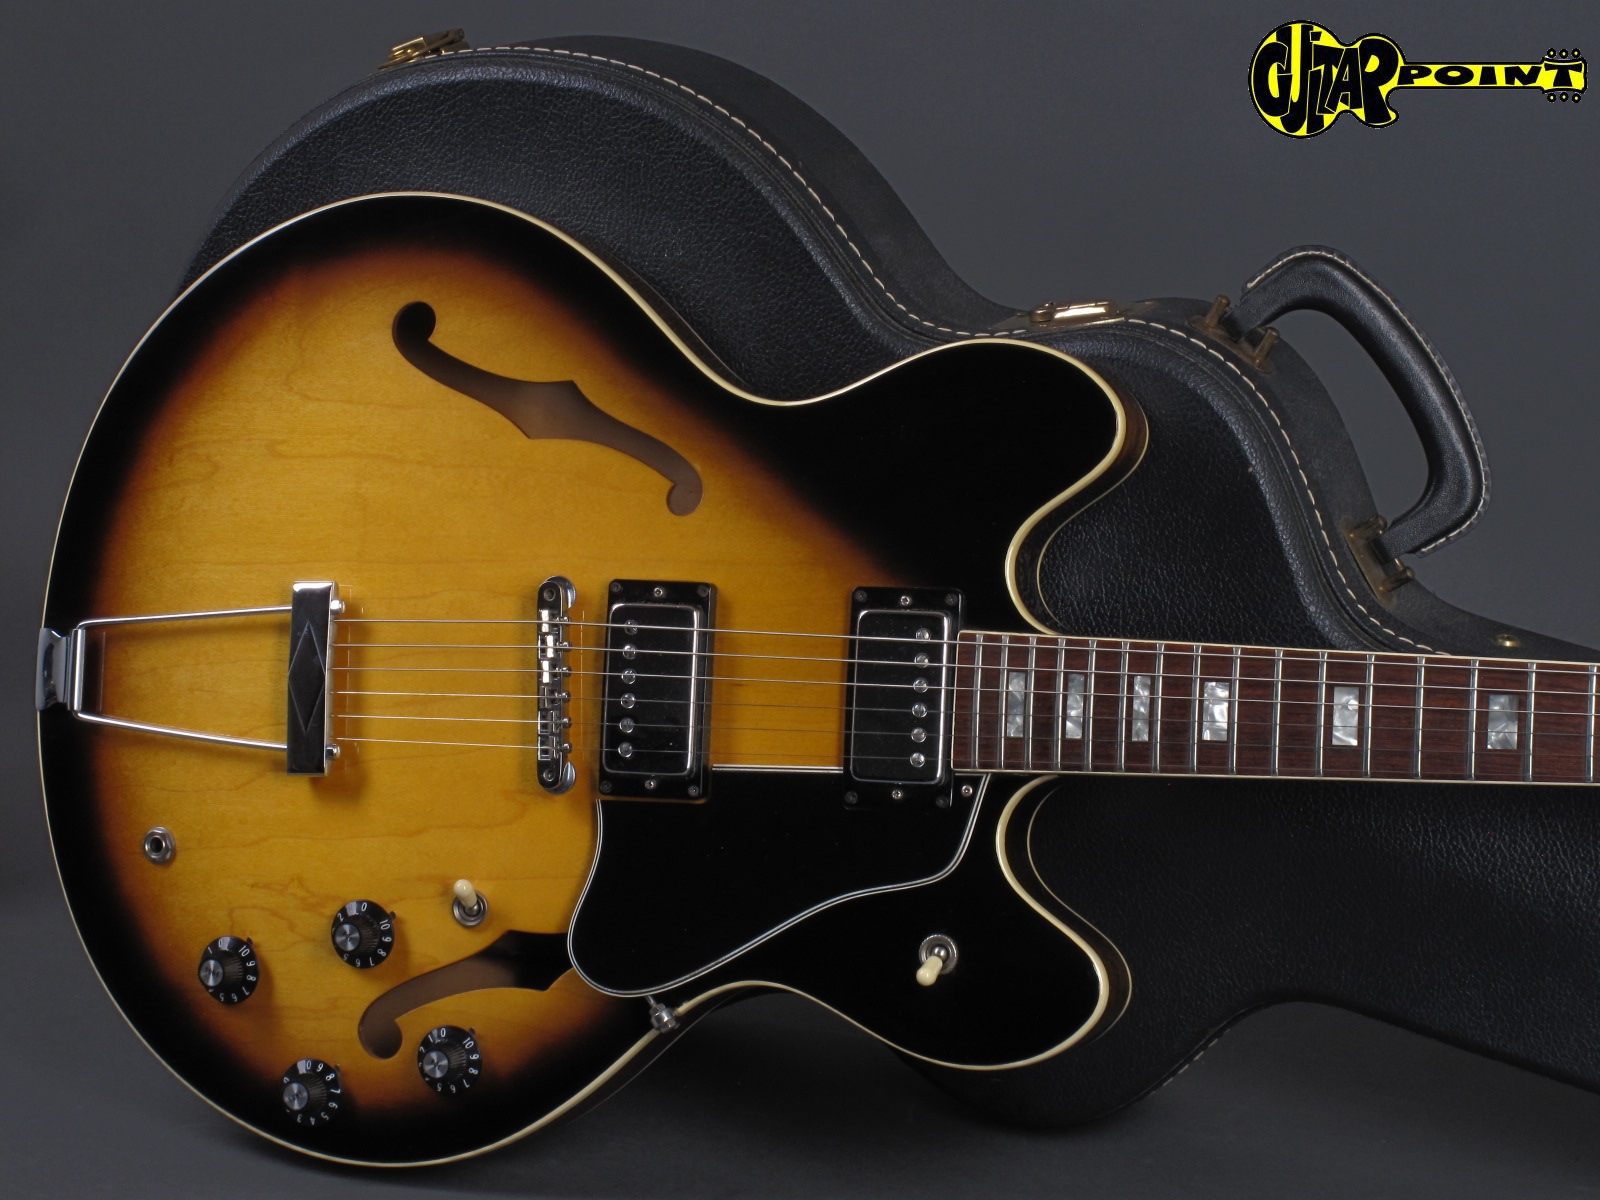 Gibson ES 335 TD 1976 Sunburst Guitar For Sale GuitarPoint